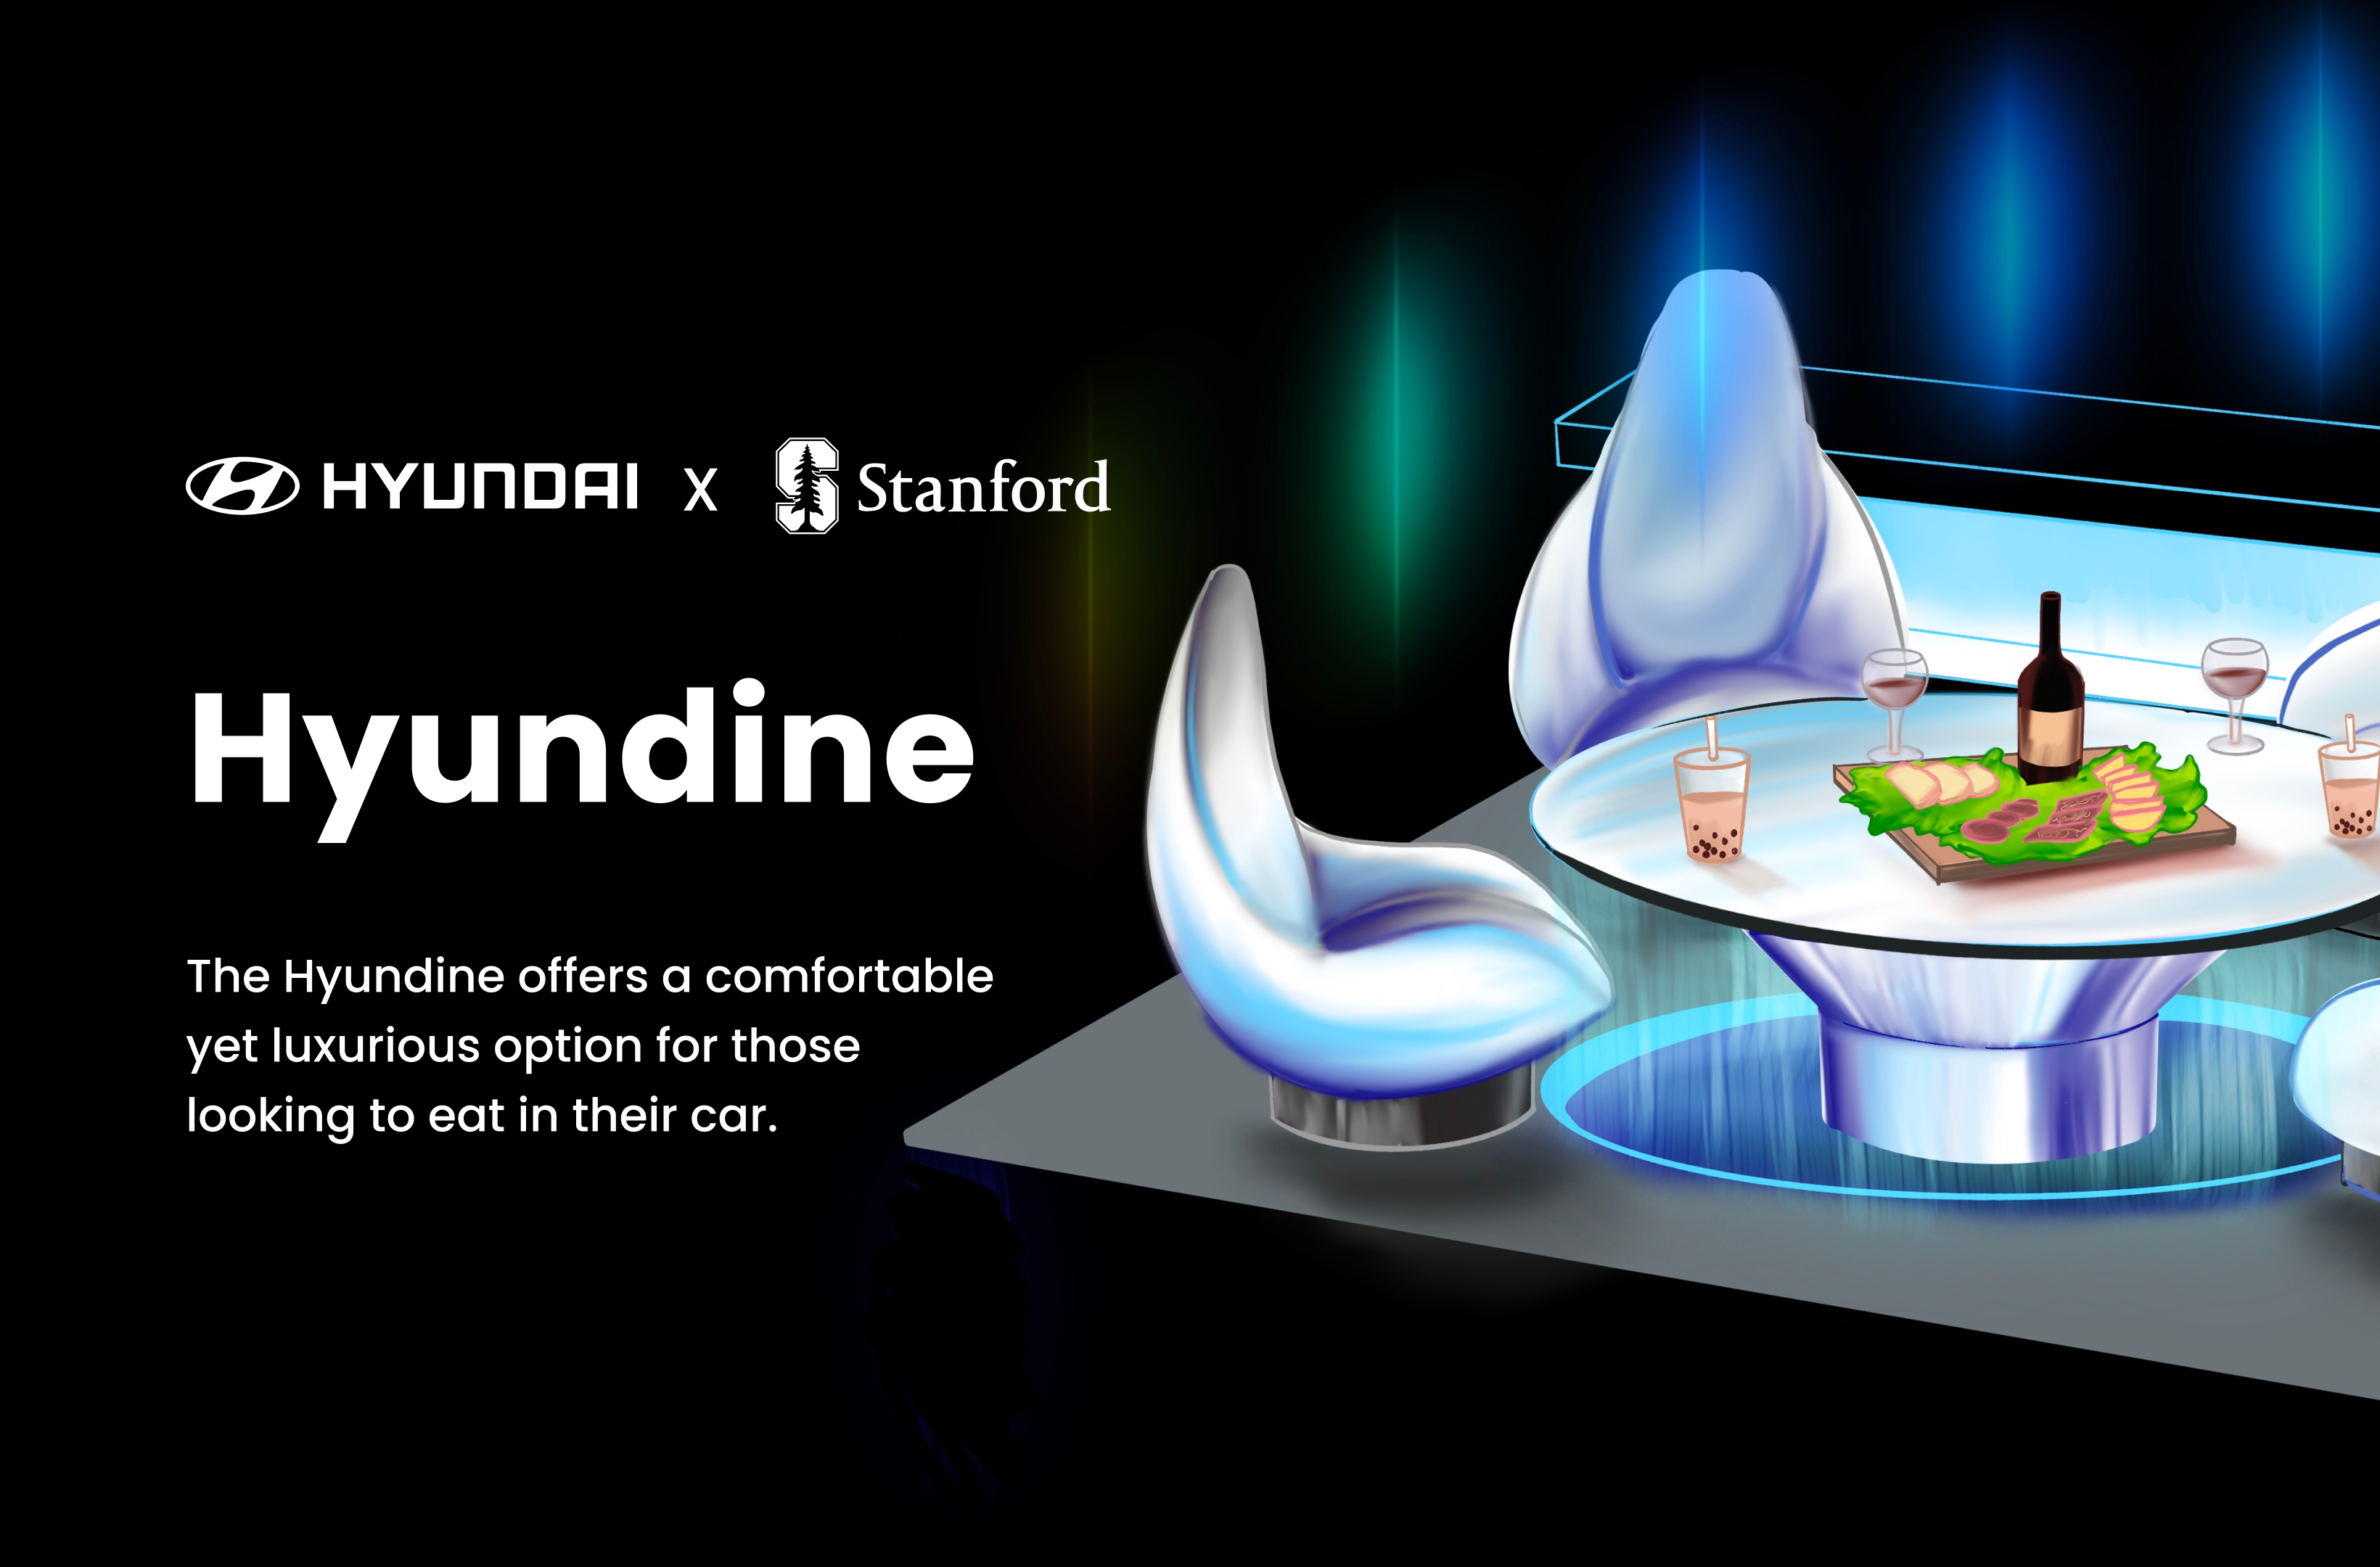 Product Design | Hyundai x Stanford (Hyundine)